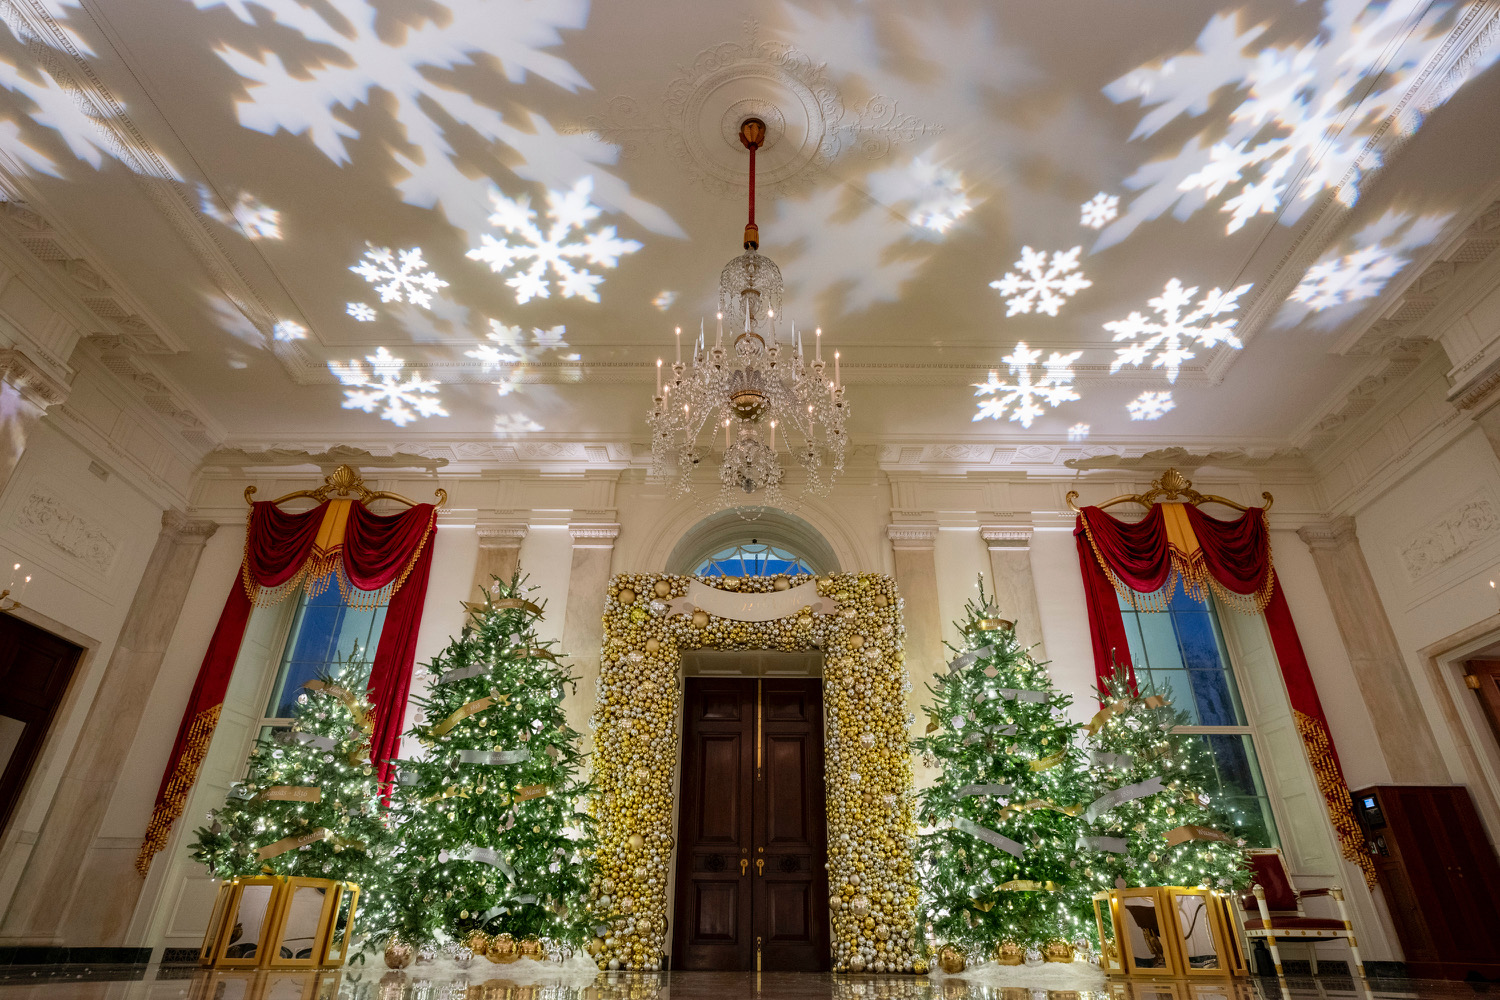 https://www.whitehouse.gov/wp-content/uploads/2022/11/Grand-Foyer-1059649262.jpg?w=1500